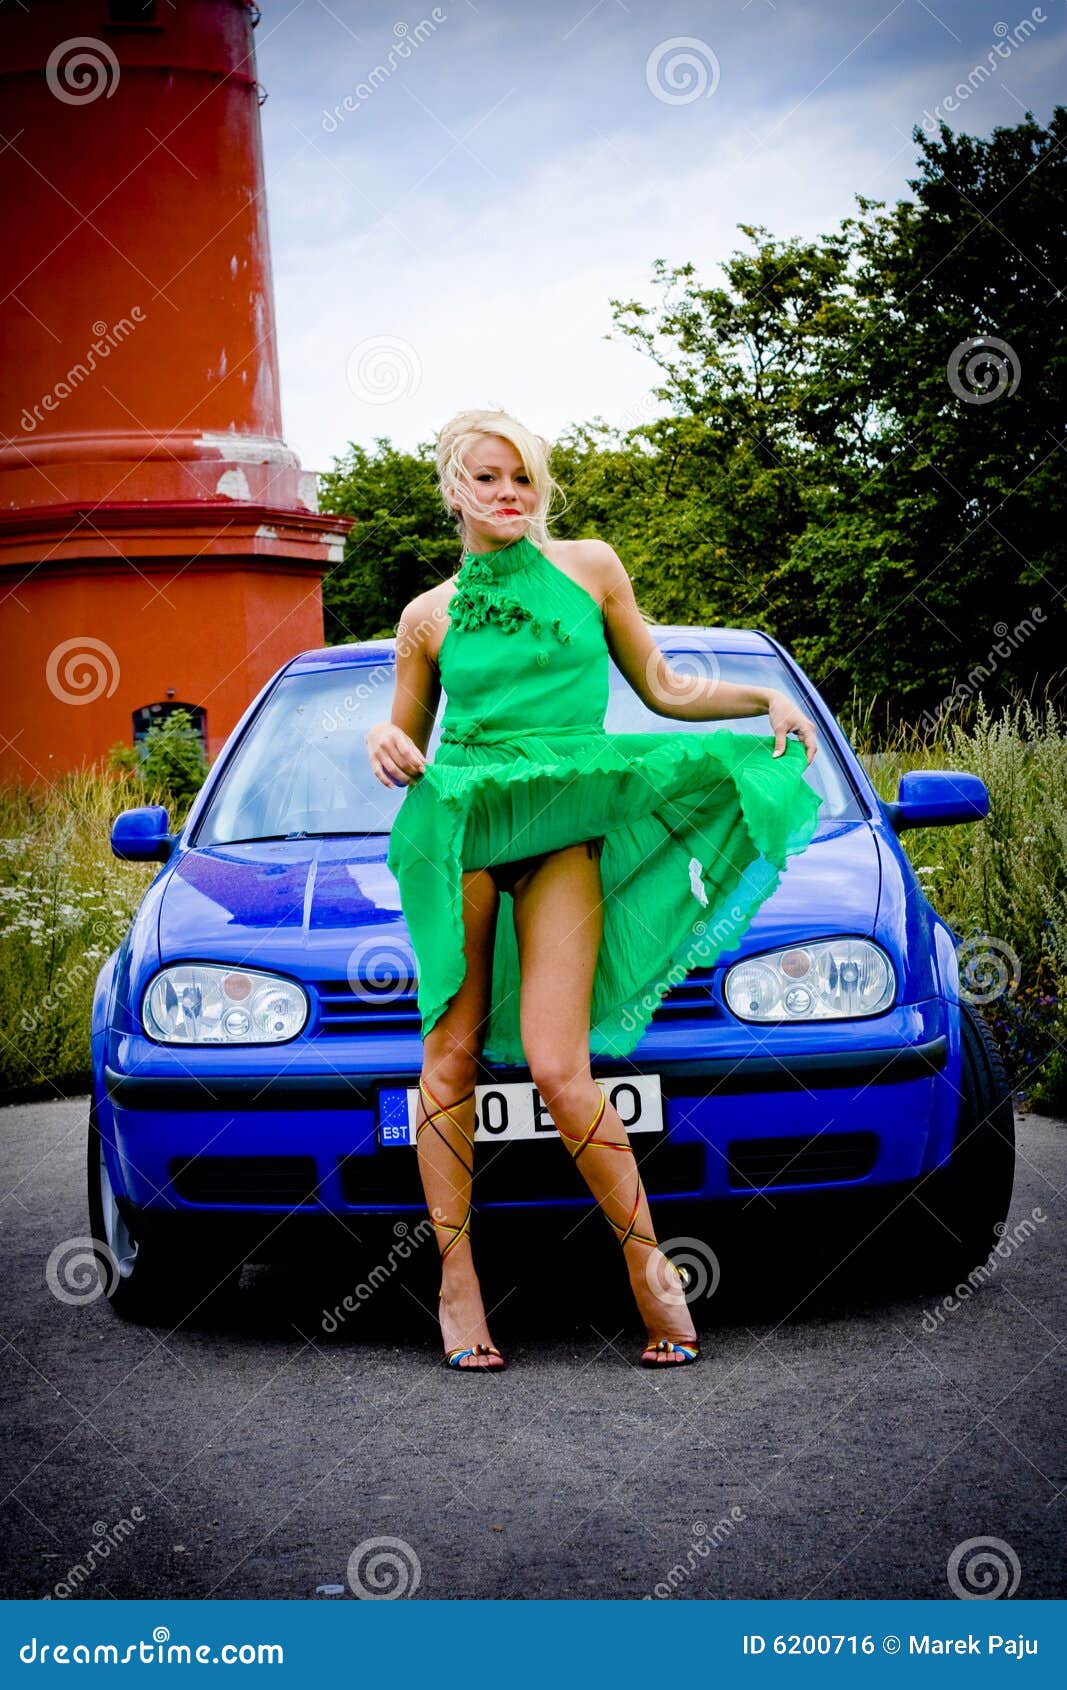 Pin by Belen De Gennaro on Fotografía | Car poses, Classic car photoshoot,  Girl photography poses